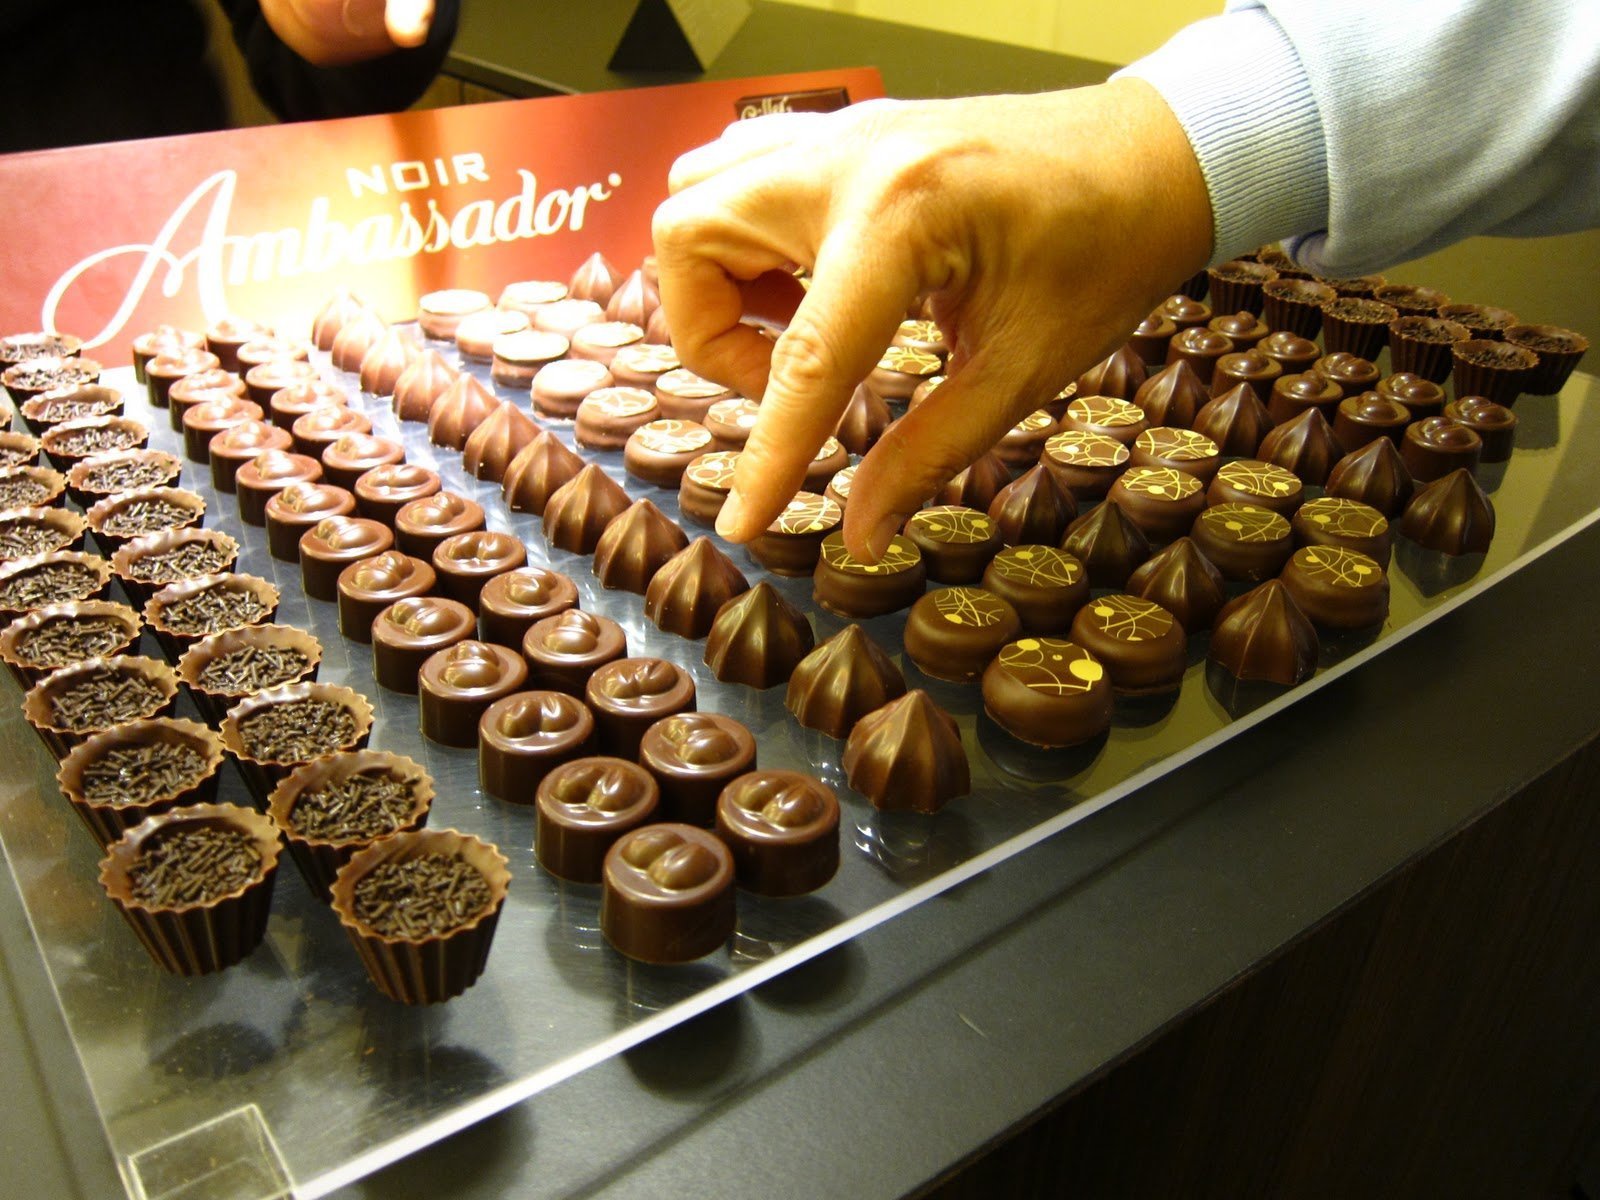 Шоколадная фабрика г. Швейцарский шоколад Cailler. Швейцария шоколадная фабрика Цюрих. Шоколад Cailler музей. Шоколадная фабрика в Швейцарии в броке.